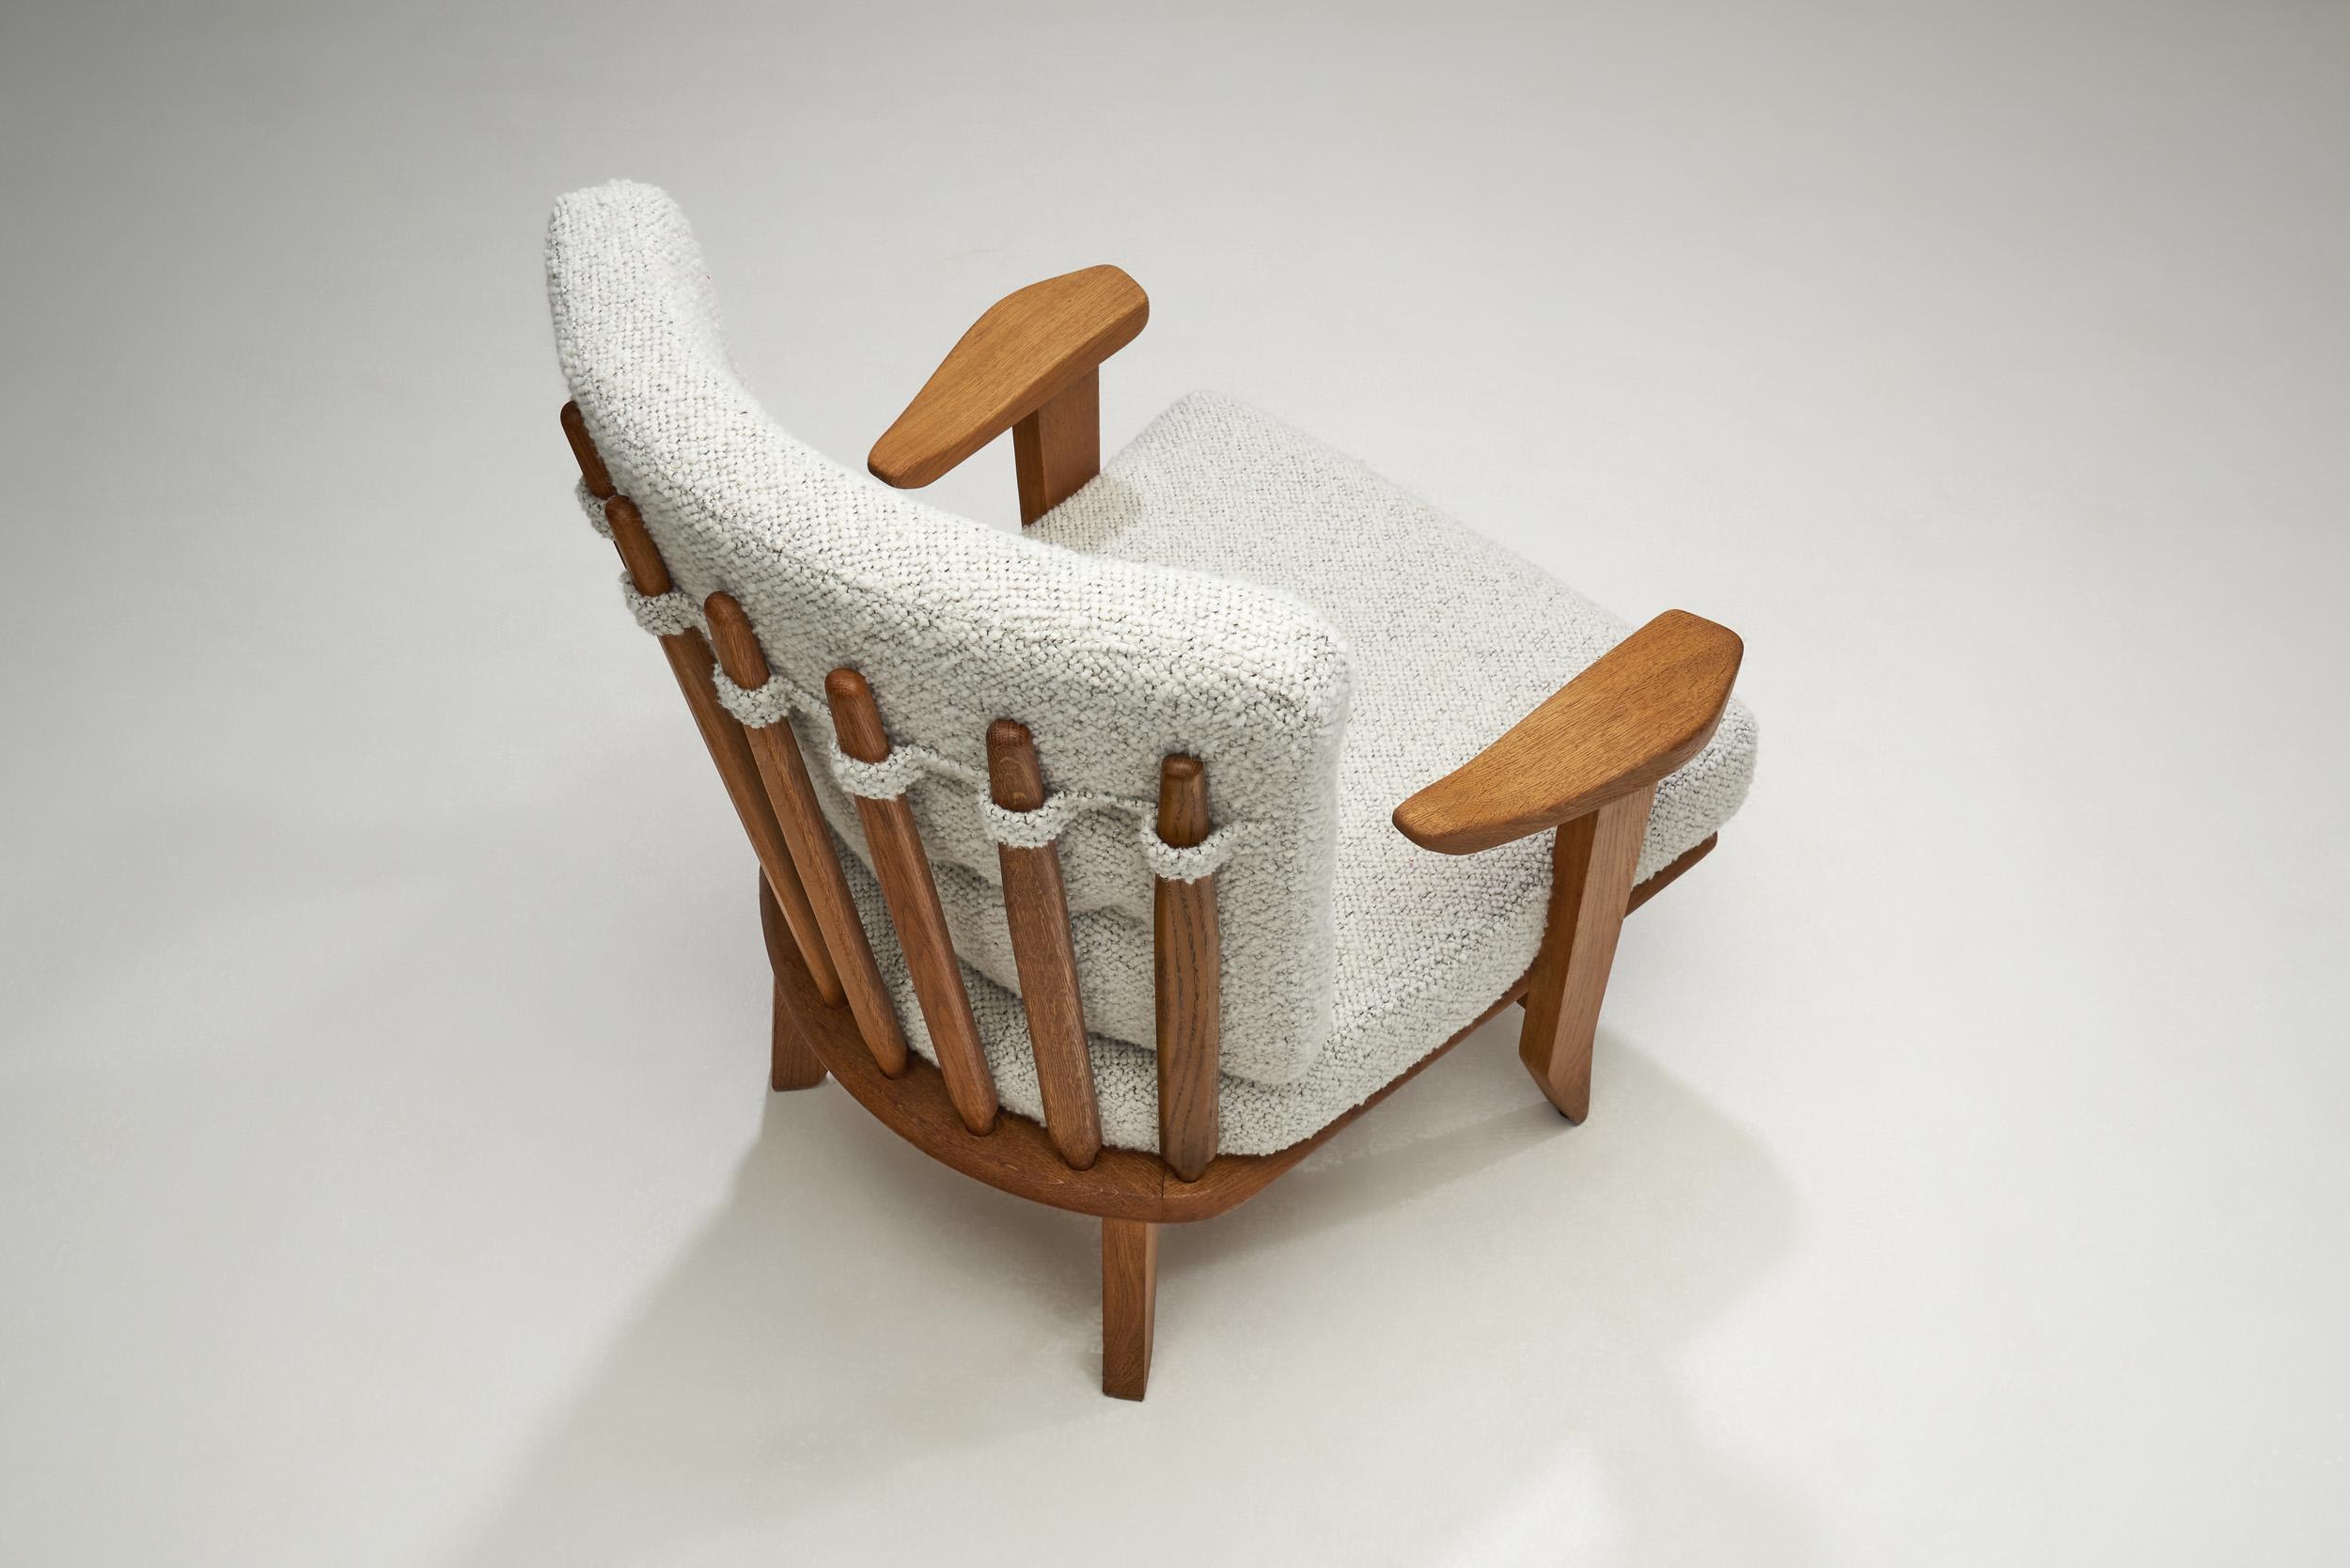 Mid-20th Century Guillerme et Chambron Sculpted Oak Lounge Chair for Votre Maison, France 1950s